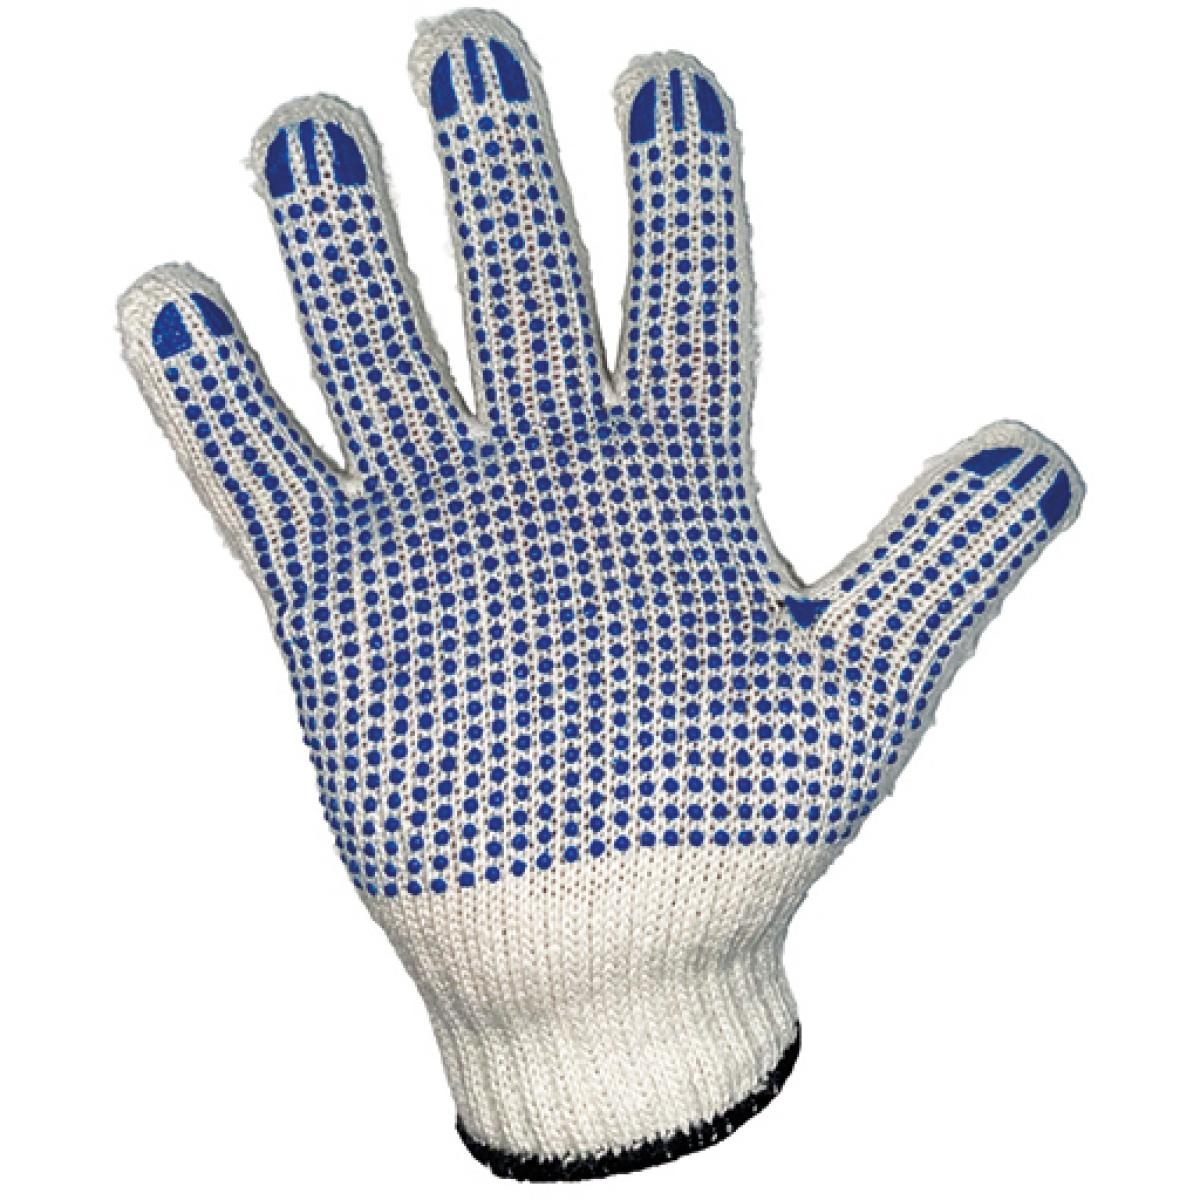 Hersteller: Korntex Herstellernummer: HSGS7/10 Artikelbezeichnung: Handschuhe, Coarse Knitted Glove, EN 21420: 2020 Cat. I Farbe: Ecru/Blue